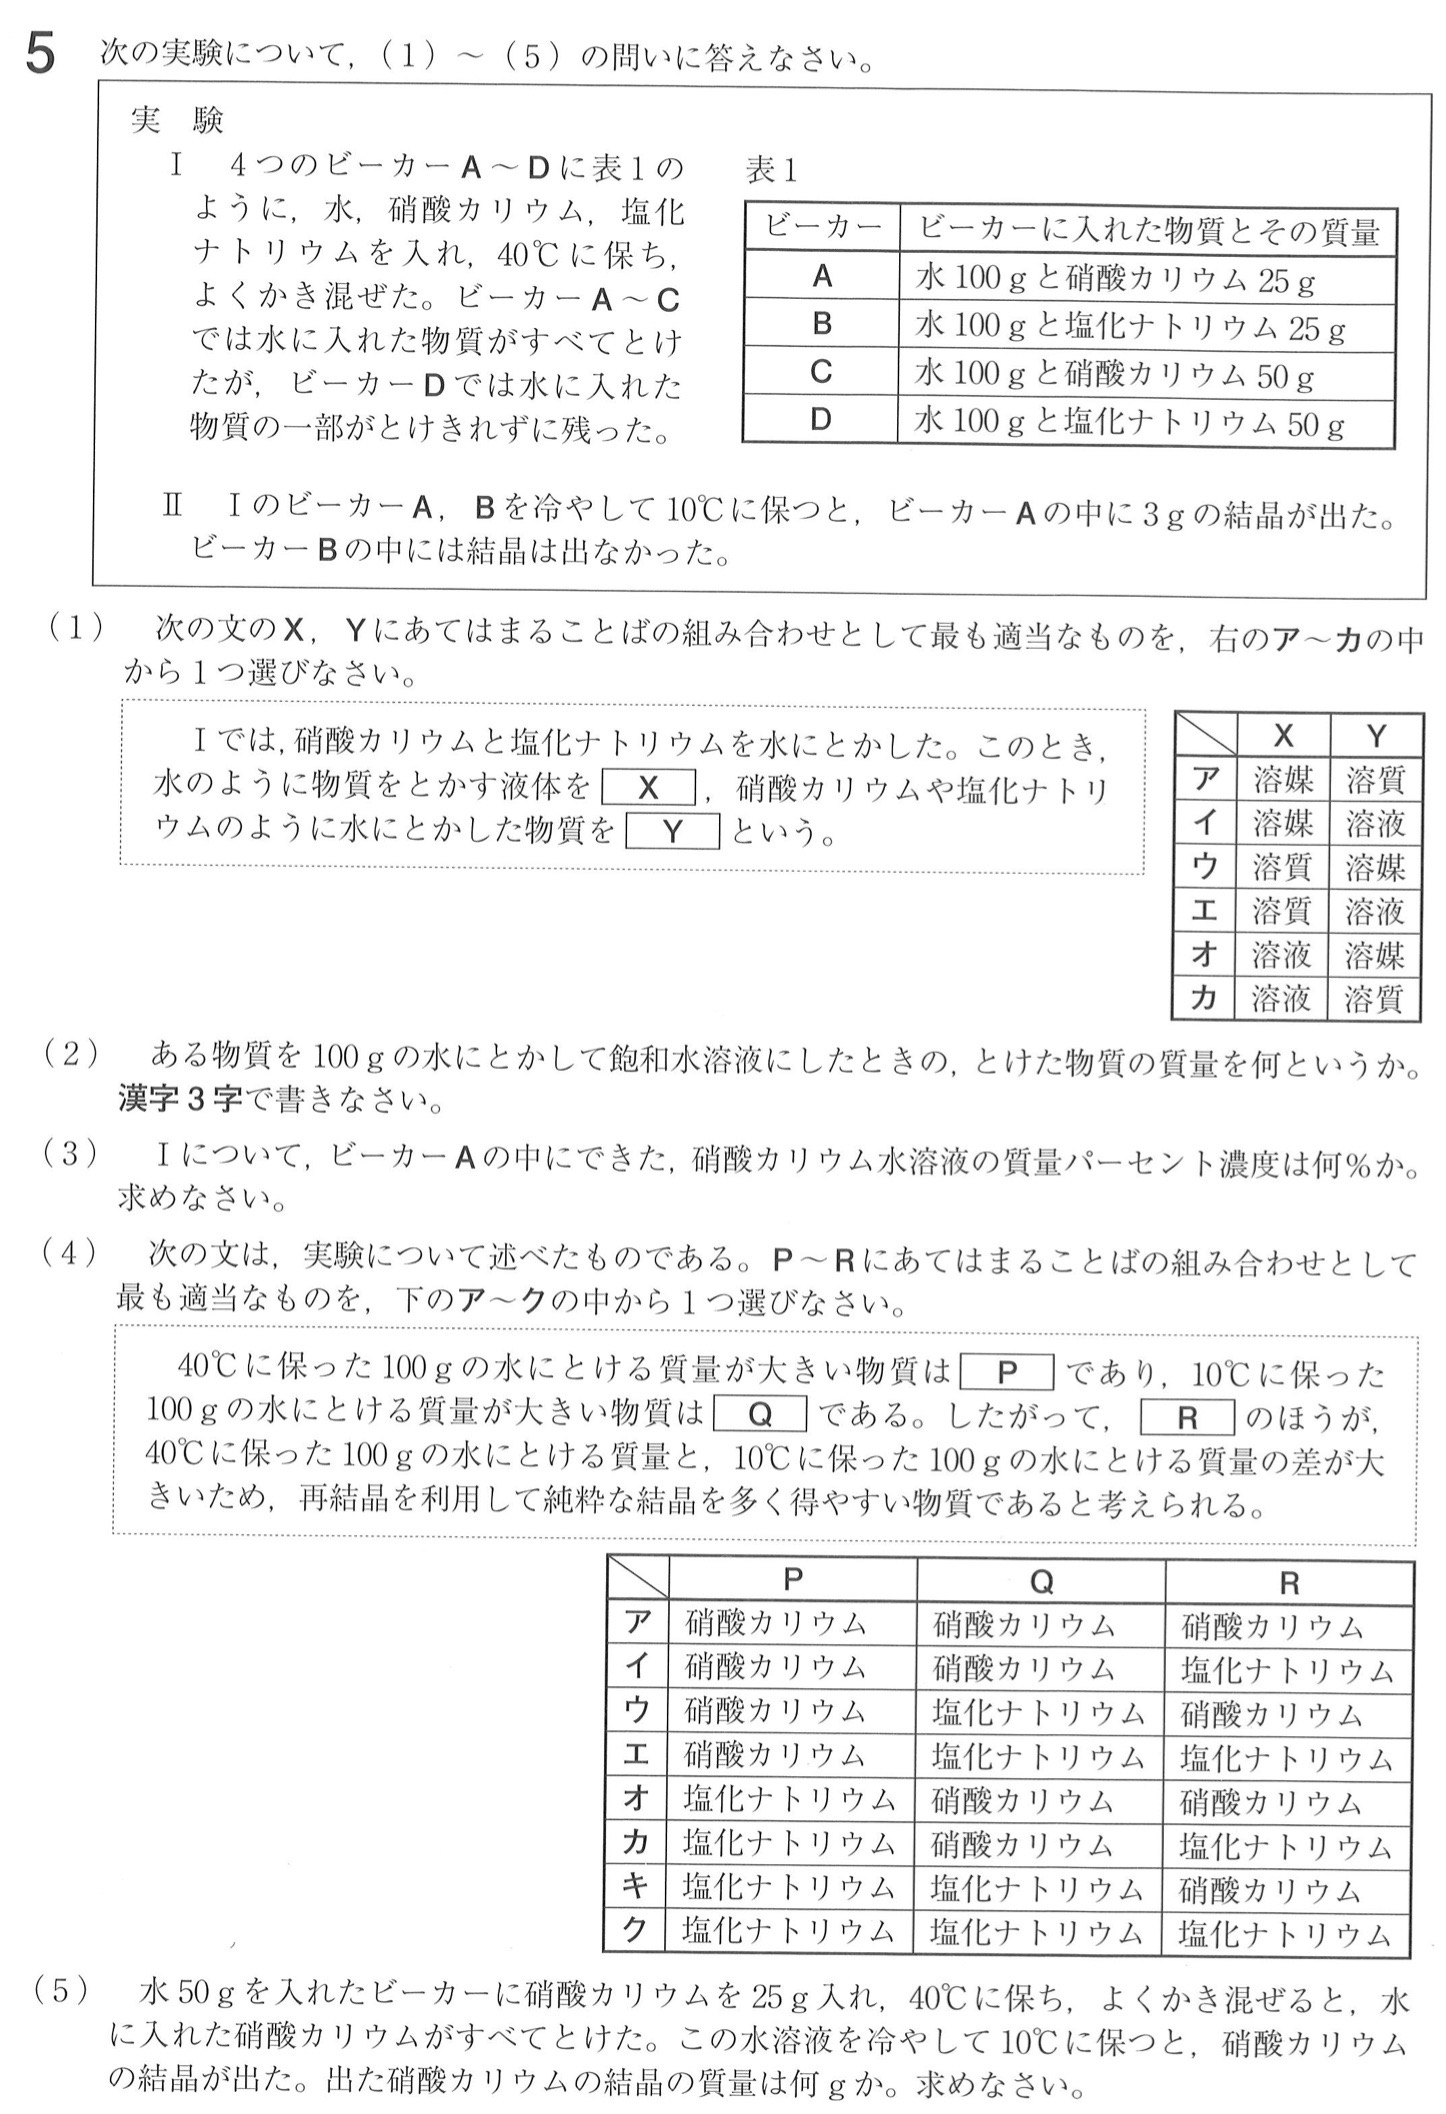 福島県公立高校入試理科2022年(令和4年)過去問題